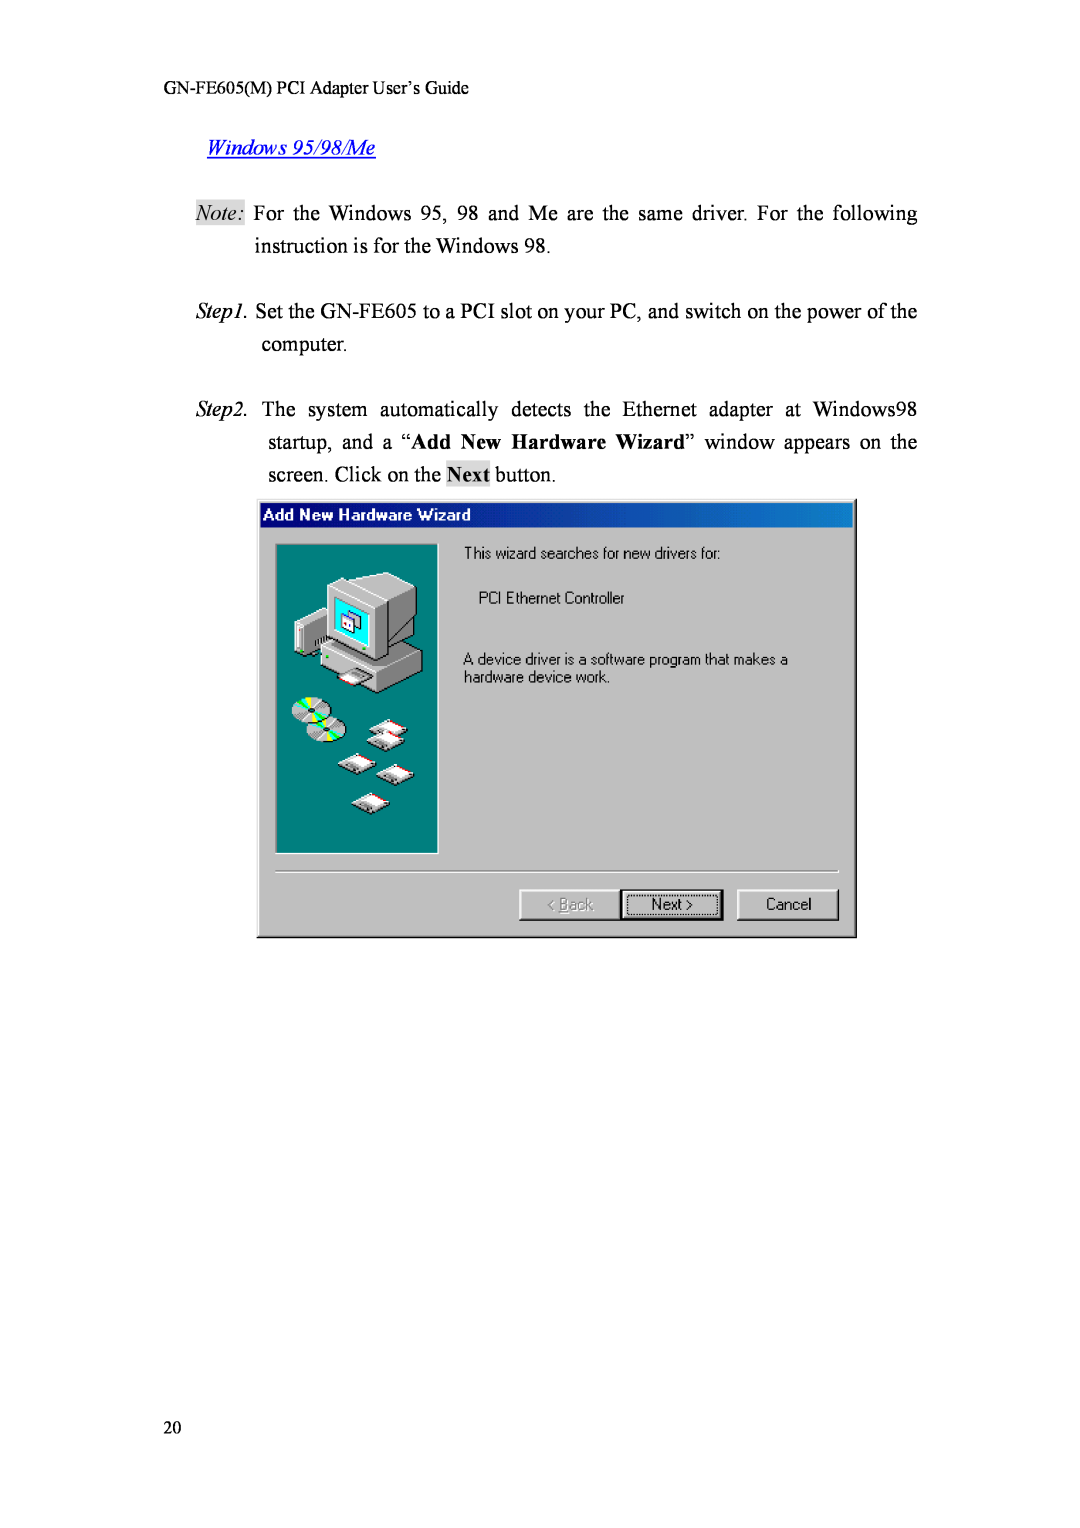 Gigabyte GN-FE605(M) manual Windows 95/98/Me, GN-FE605M PCI Adapter User’s Guide 